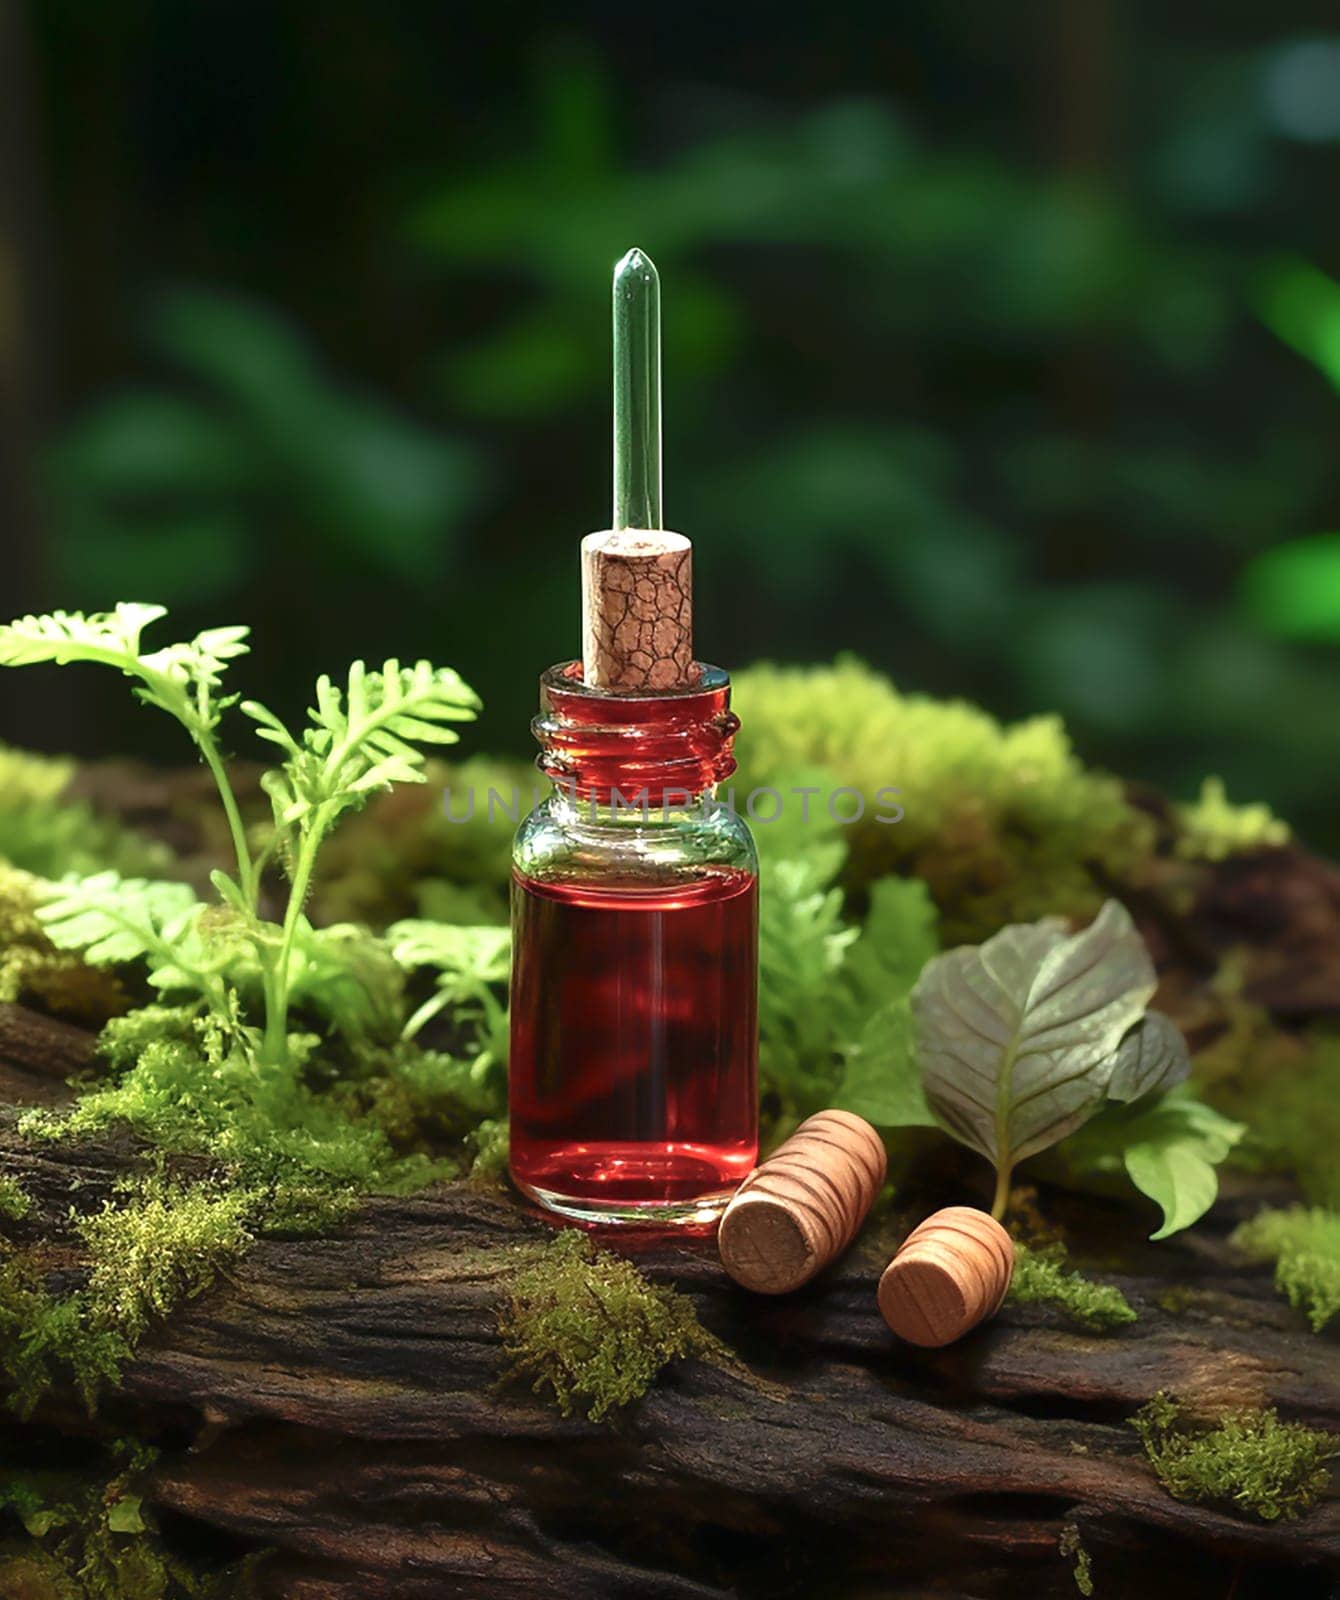 cosmetic ingredient Pycnogenol or Pinus pinaster in dark bottle stands on bark by Suietska